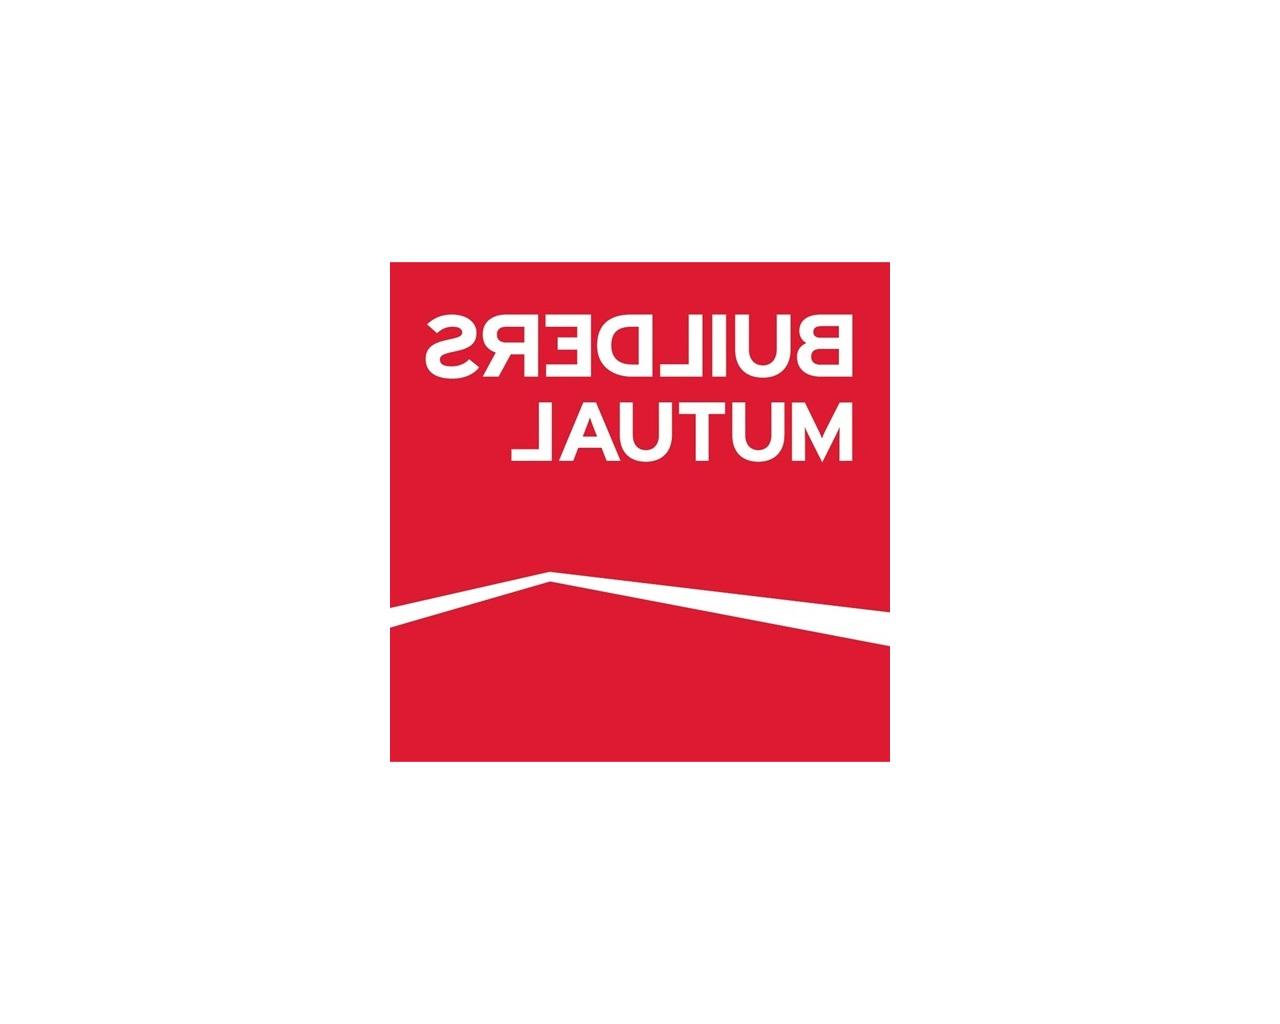 Builders Mutual logo